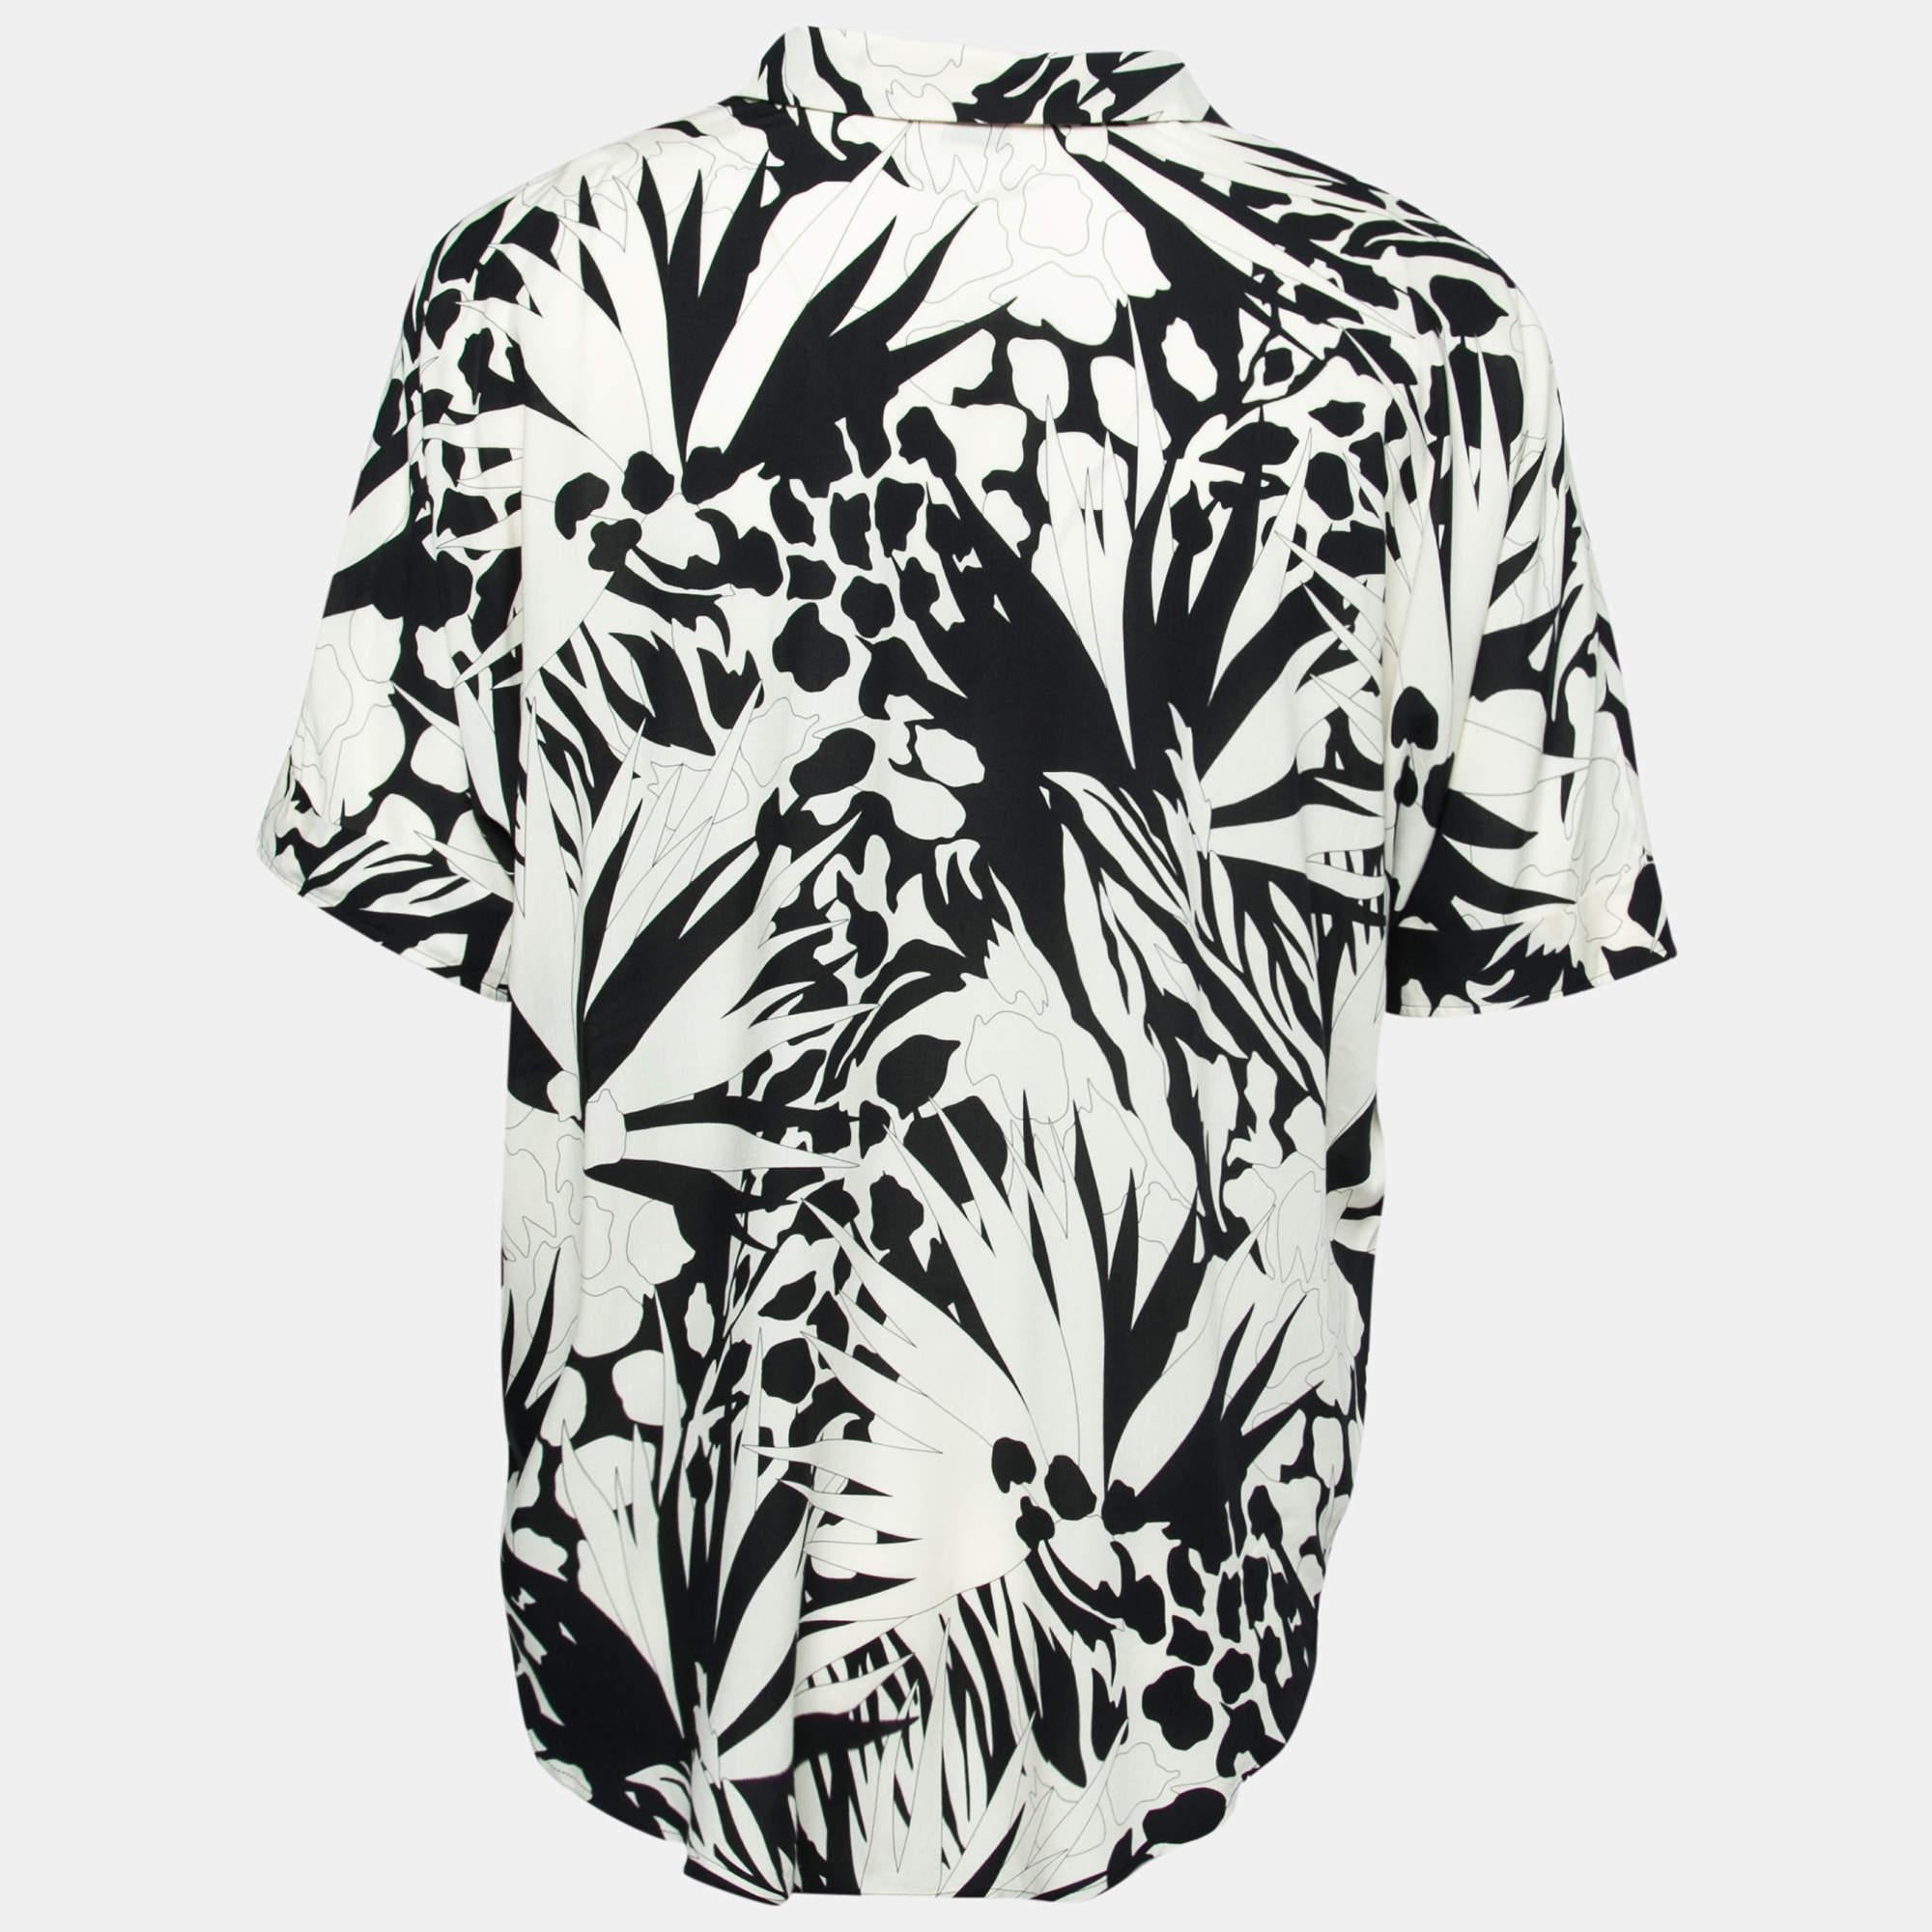 Die hohe Kunstfertigkeit dieses Hemdes zeugt von Saint Laurents jahrelanger, tadelloser Handwerkskunst in der Schneiderei. Die Kreation ist mit Dschungelmustern in Weiß- und Schwarztönen versehen. Es hat einen klassischen Kragen und einen geraden